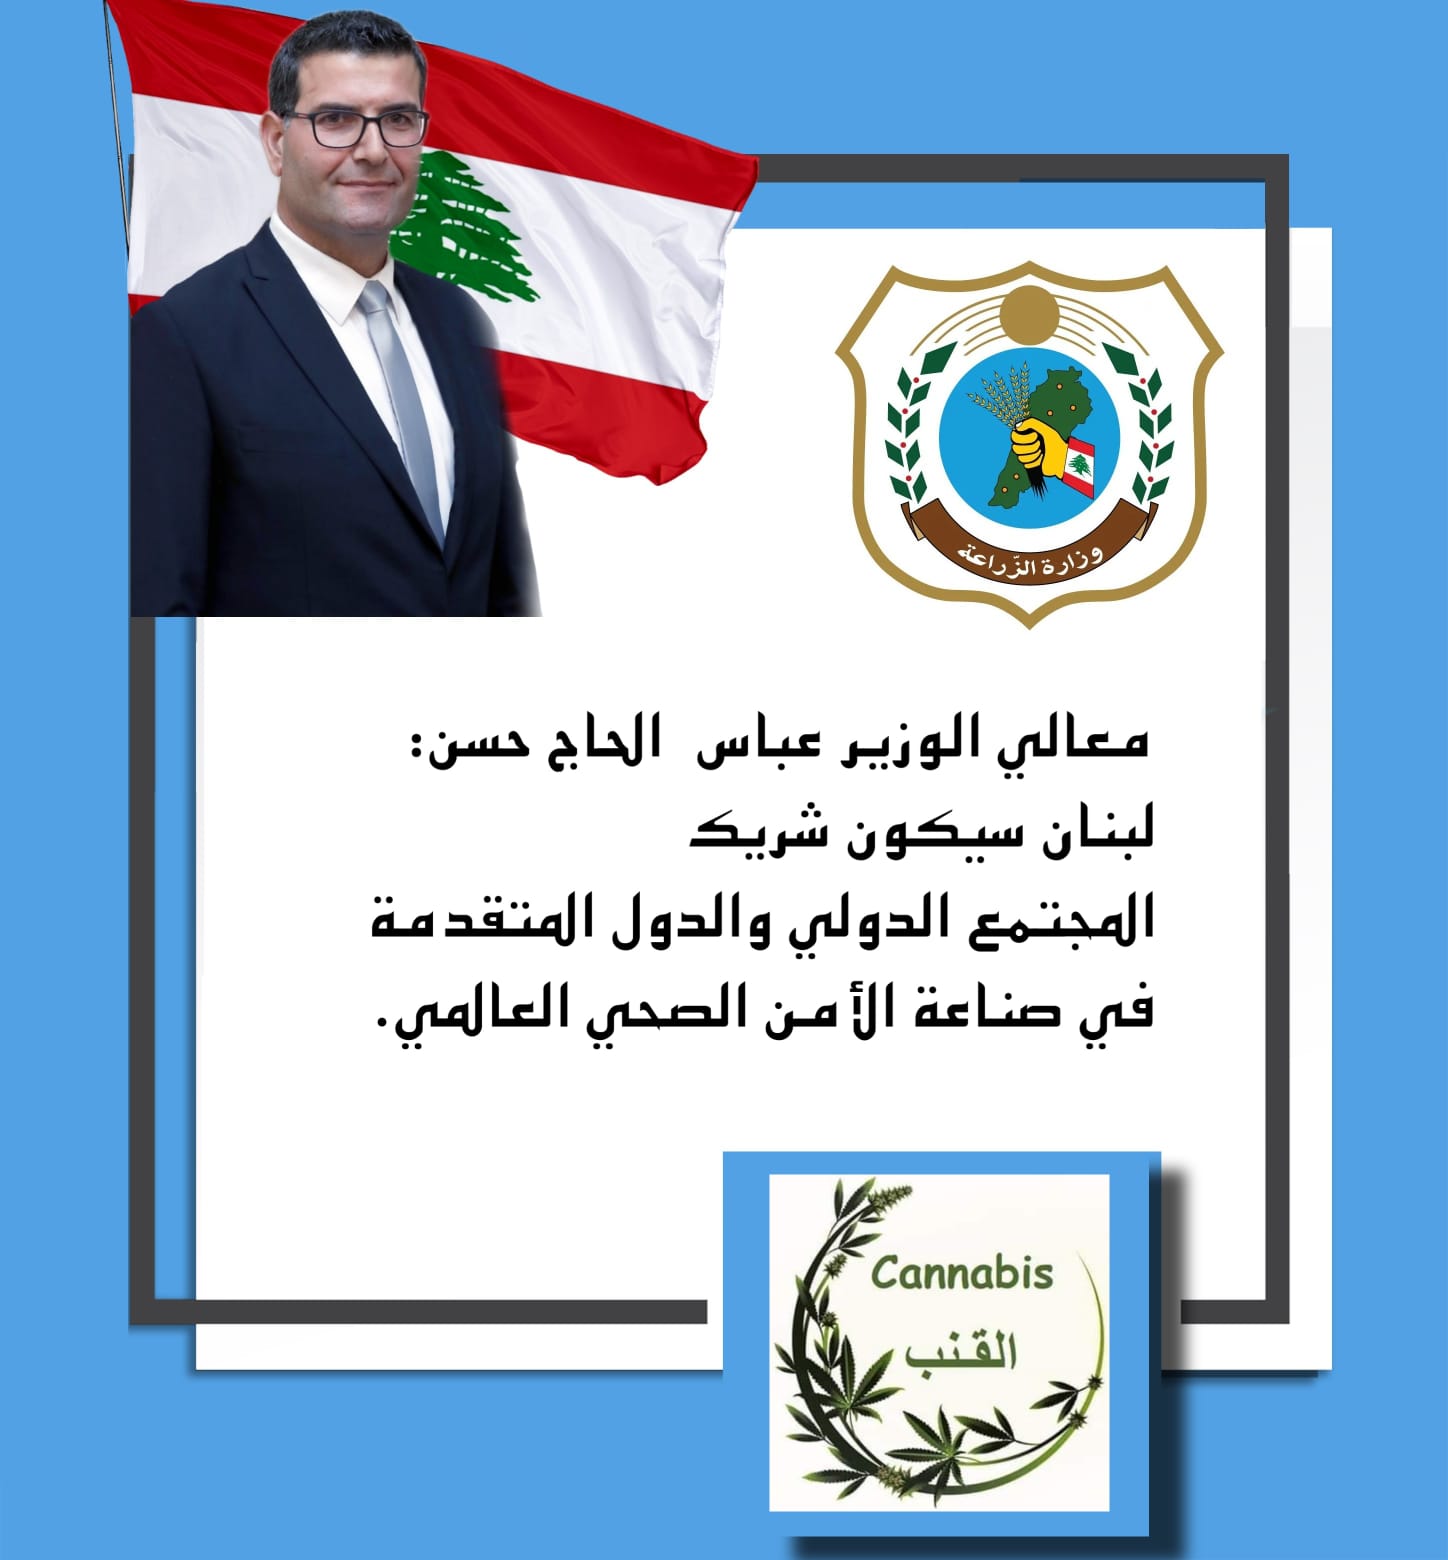 الوزير الحاج حسن: لبنان سيكون شريك المجتمع الدولي والدول المتقدمة في صناعة الامن الصحي العالمي